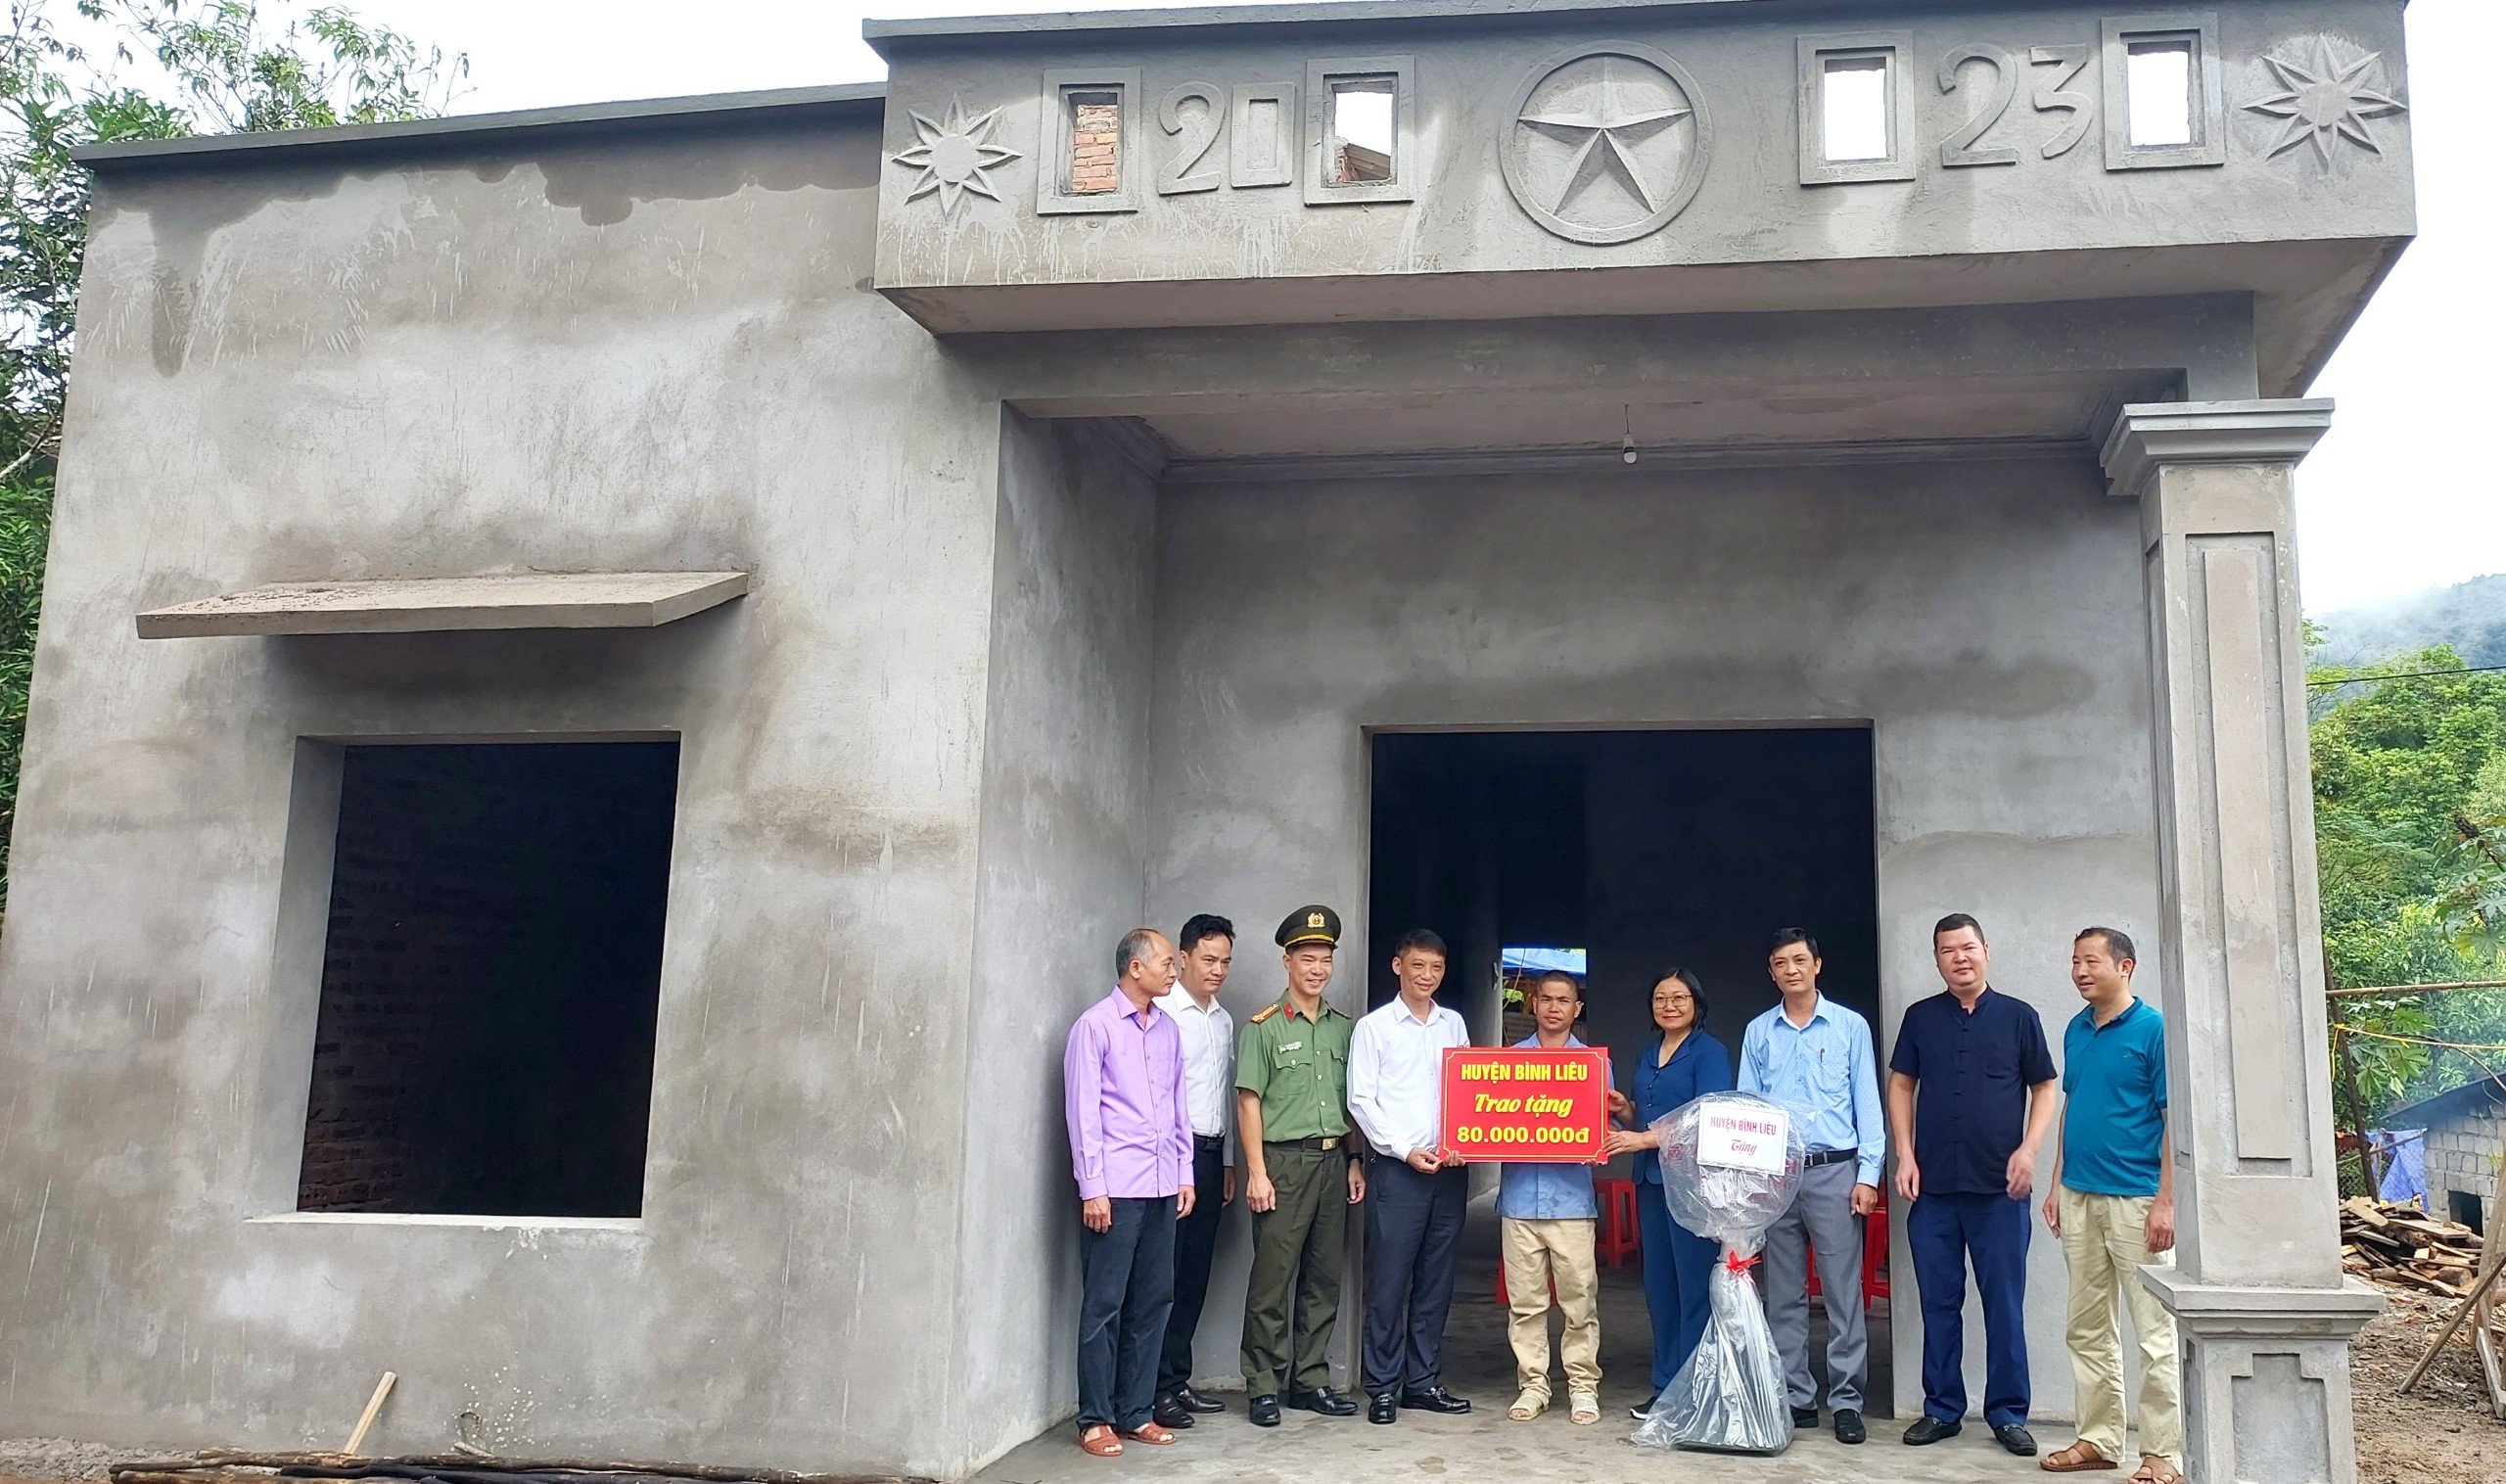 Huyện Bình Liêu bàn giao kinh phí hỗ trợ xây nhà cho gia đình ông Nình Văn Dảu Ảnh: La Lành (Trung tâm TT-VH Bình Liêu)